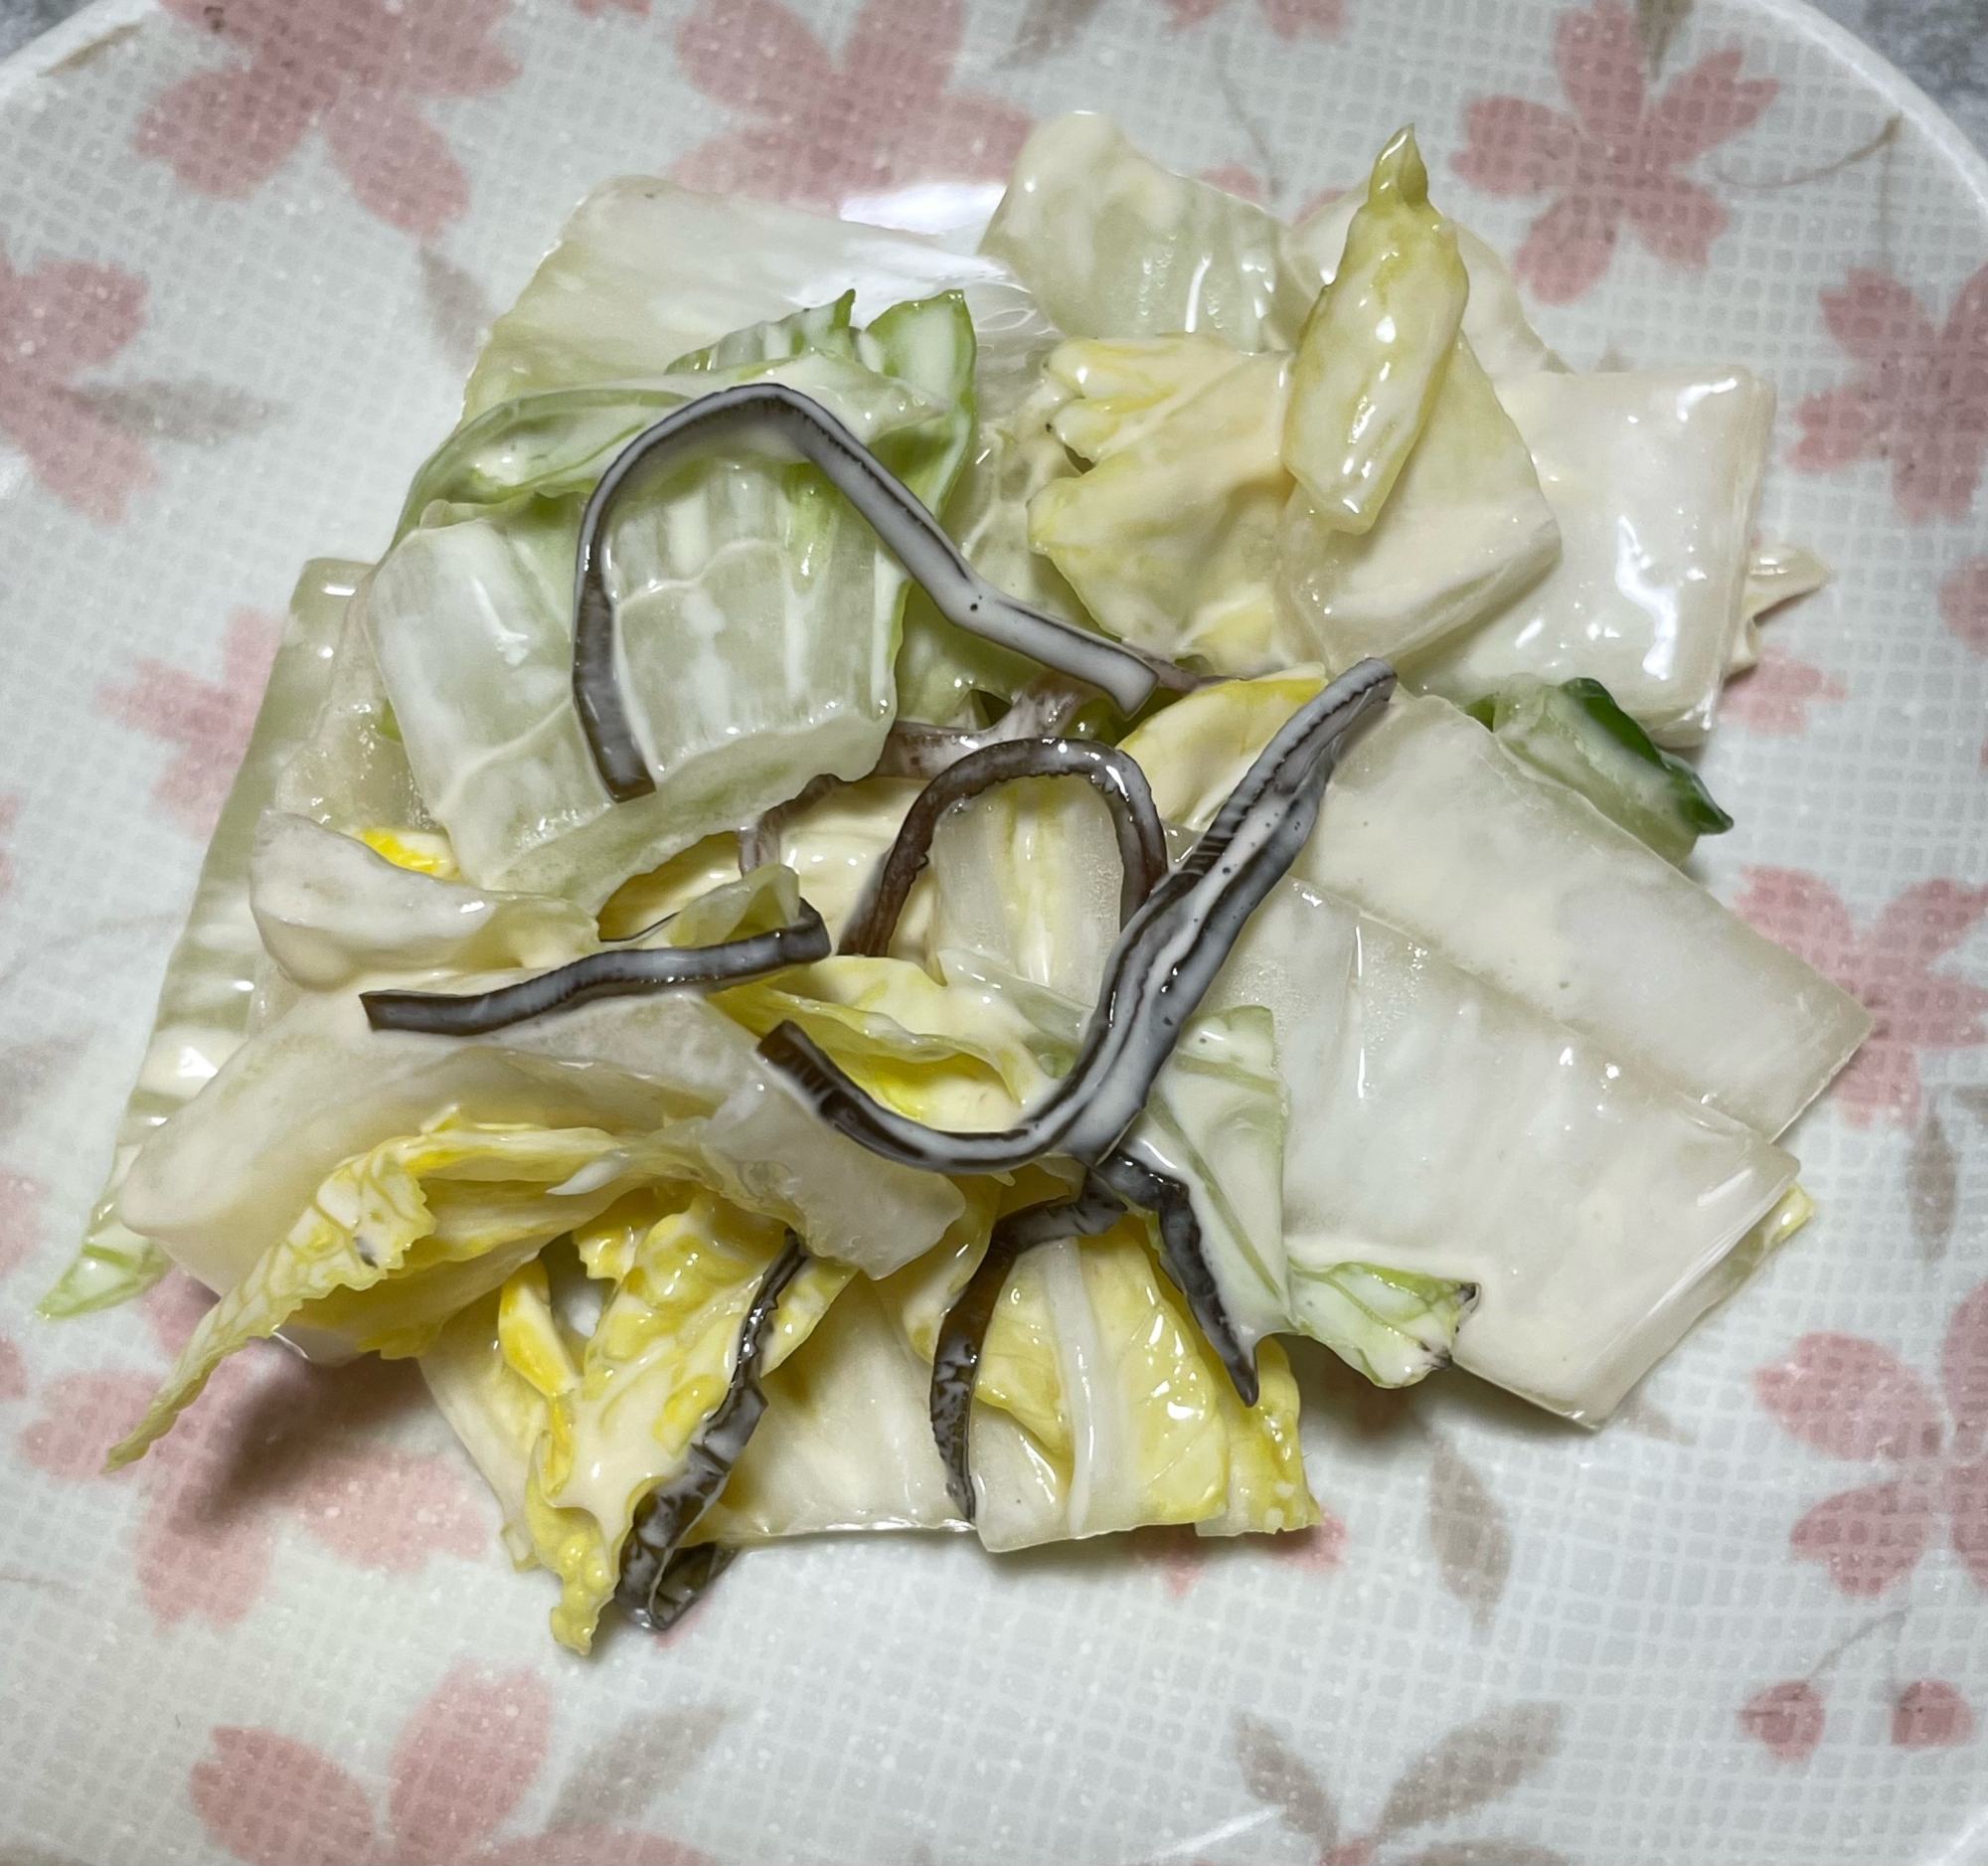 塩昆布白菜 (マヨ和え)